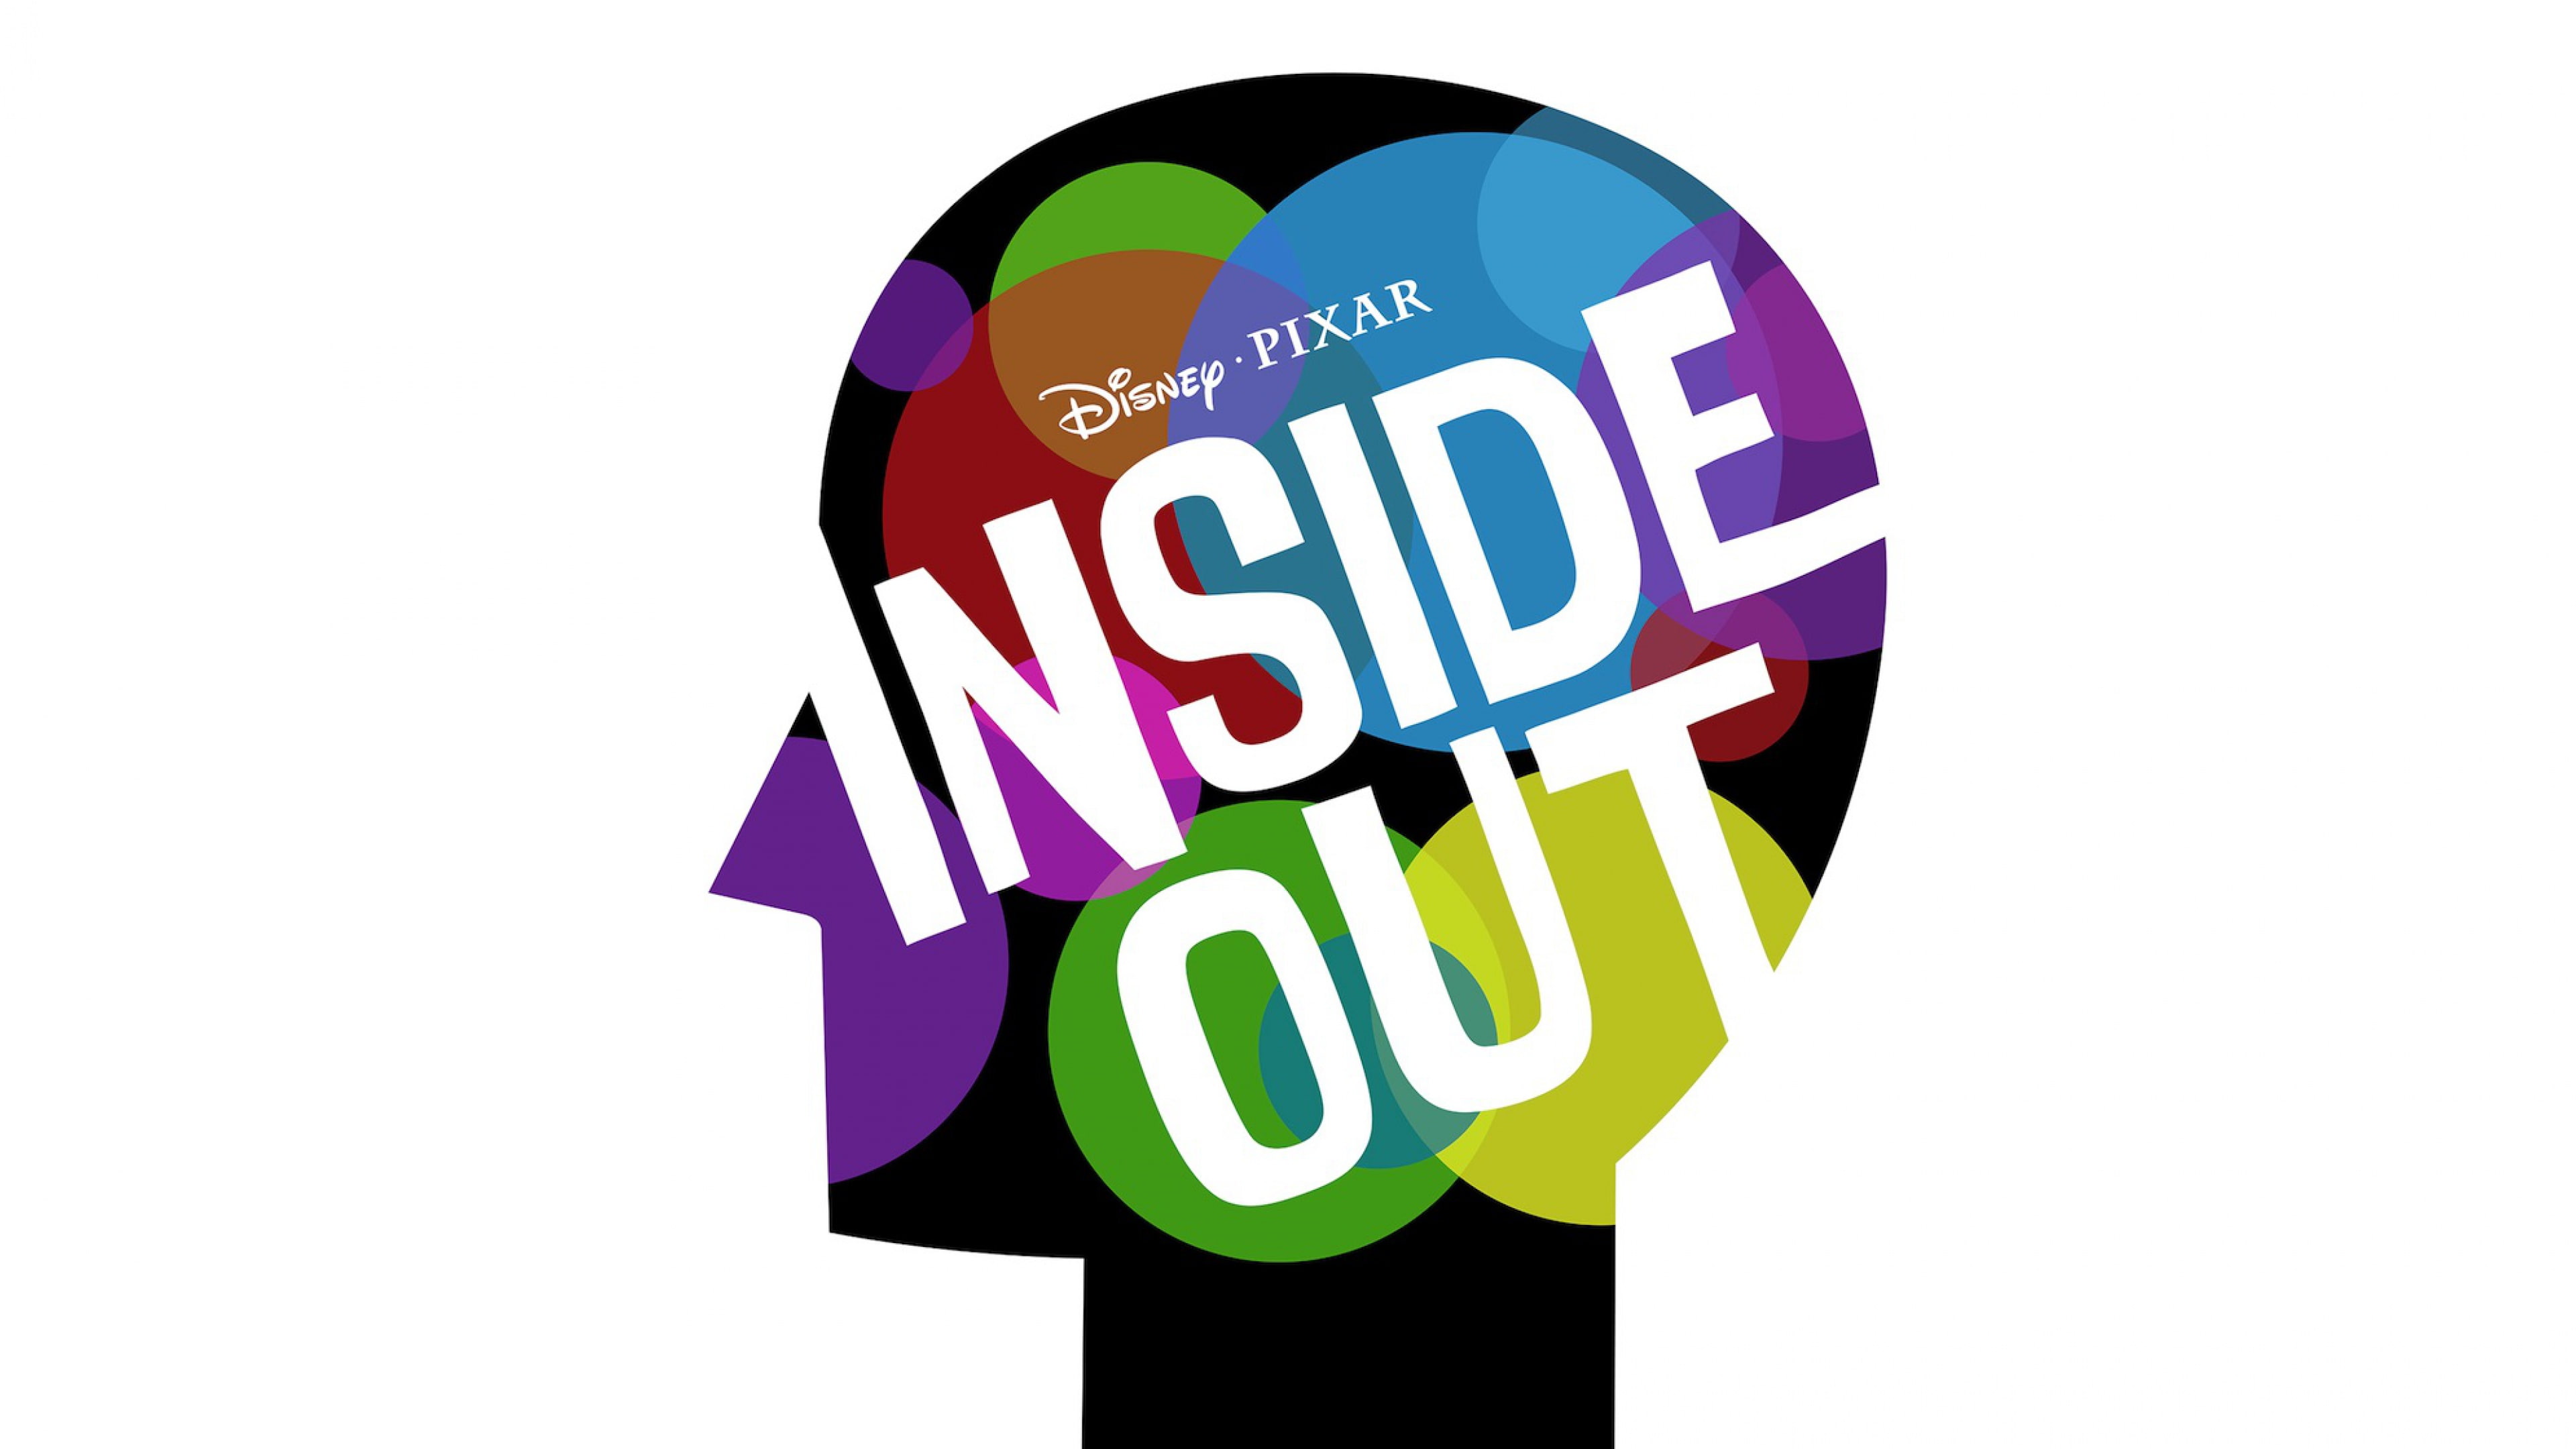 Disney, Inside Out, Pixar